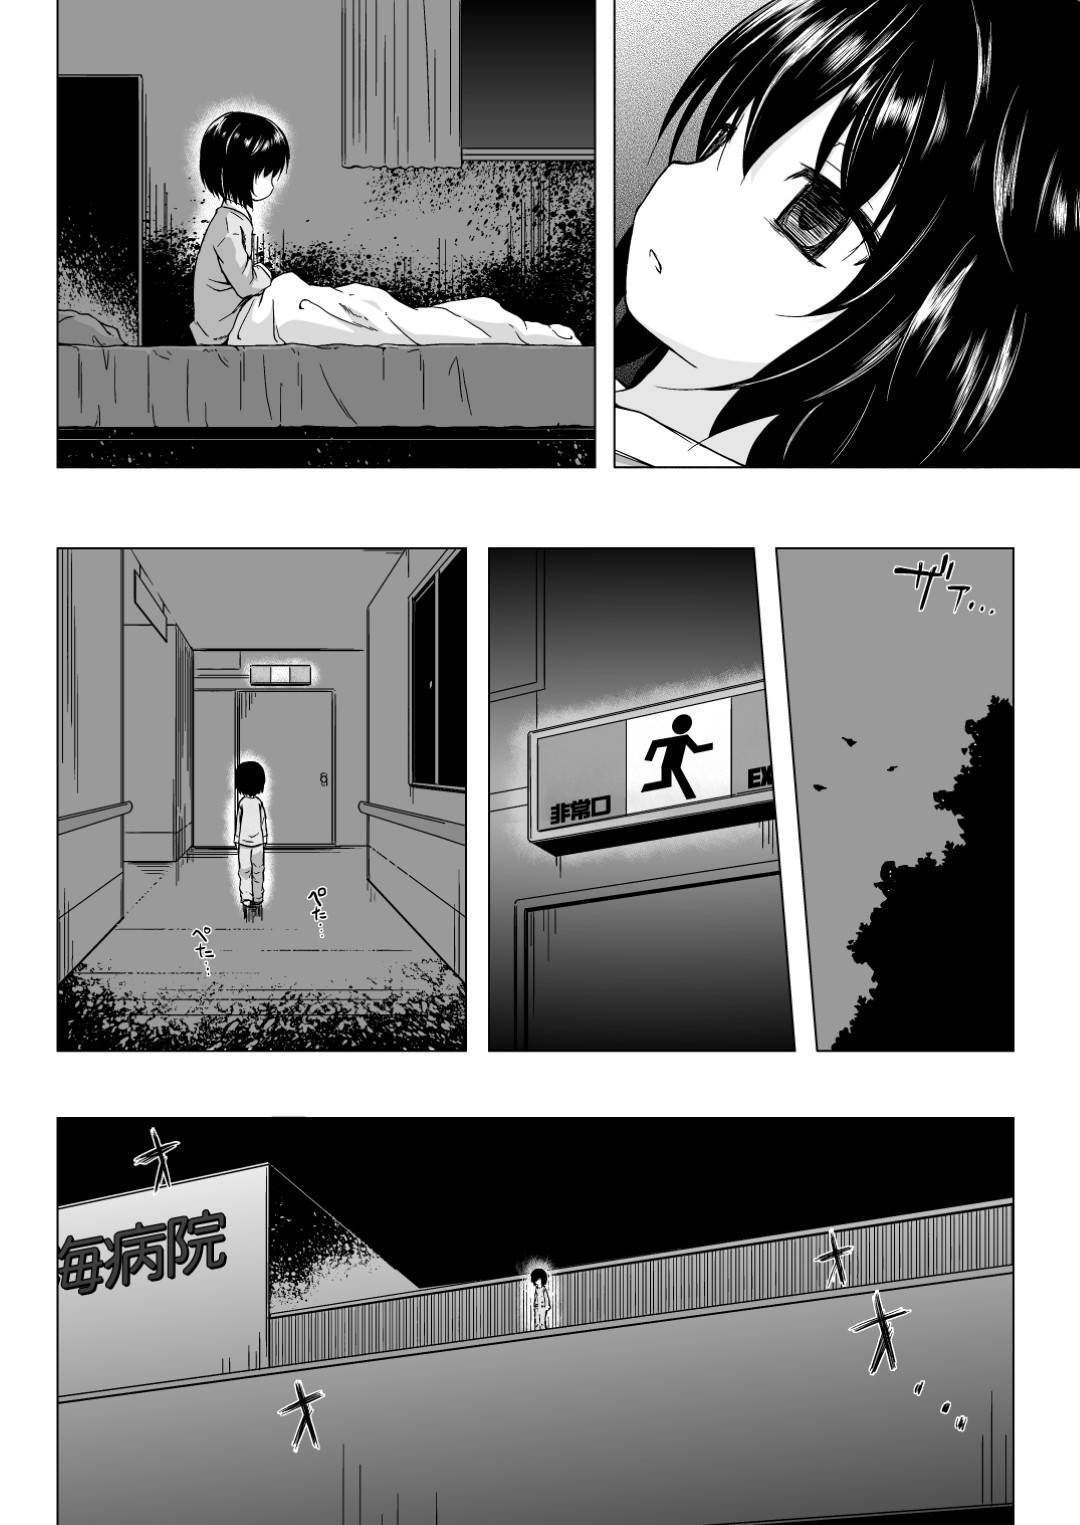 【エロ漫画】由香利はキモおじさんに襲われ中出しレイプされる悪夢を見る【雪野みなと】